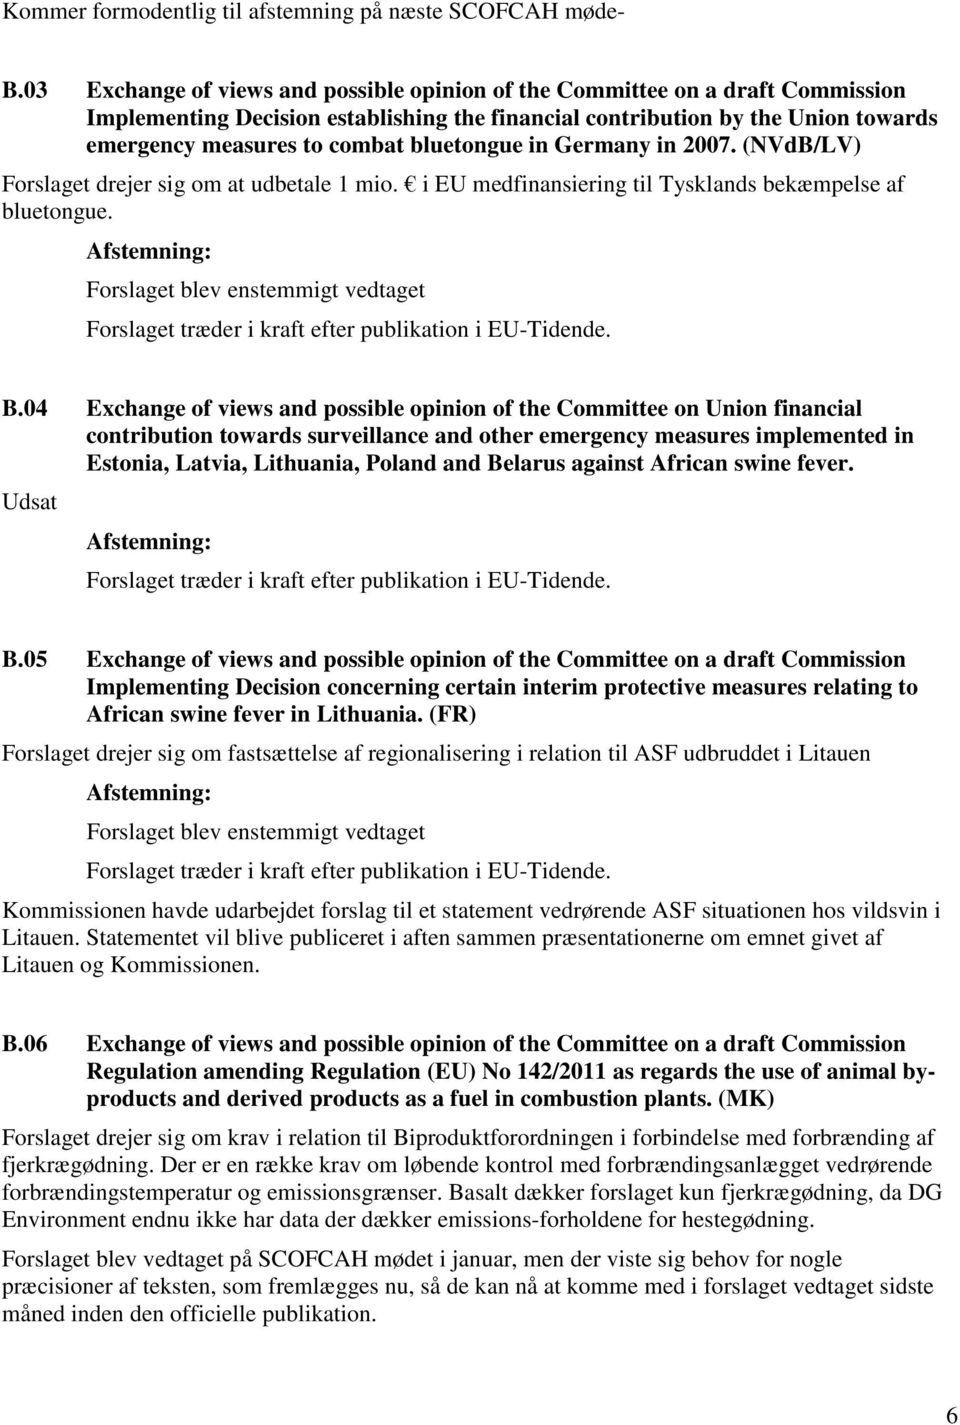 bluetongue in Germany in 2007. (NVdB/LV) Forslaget drejer sig om at udbetale 1 mio. i EU medfinansiering til Tysklands bekæmpelse af bluetongue. B.